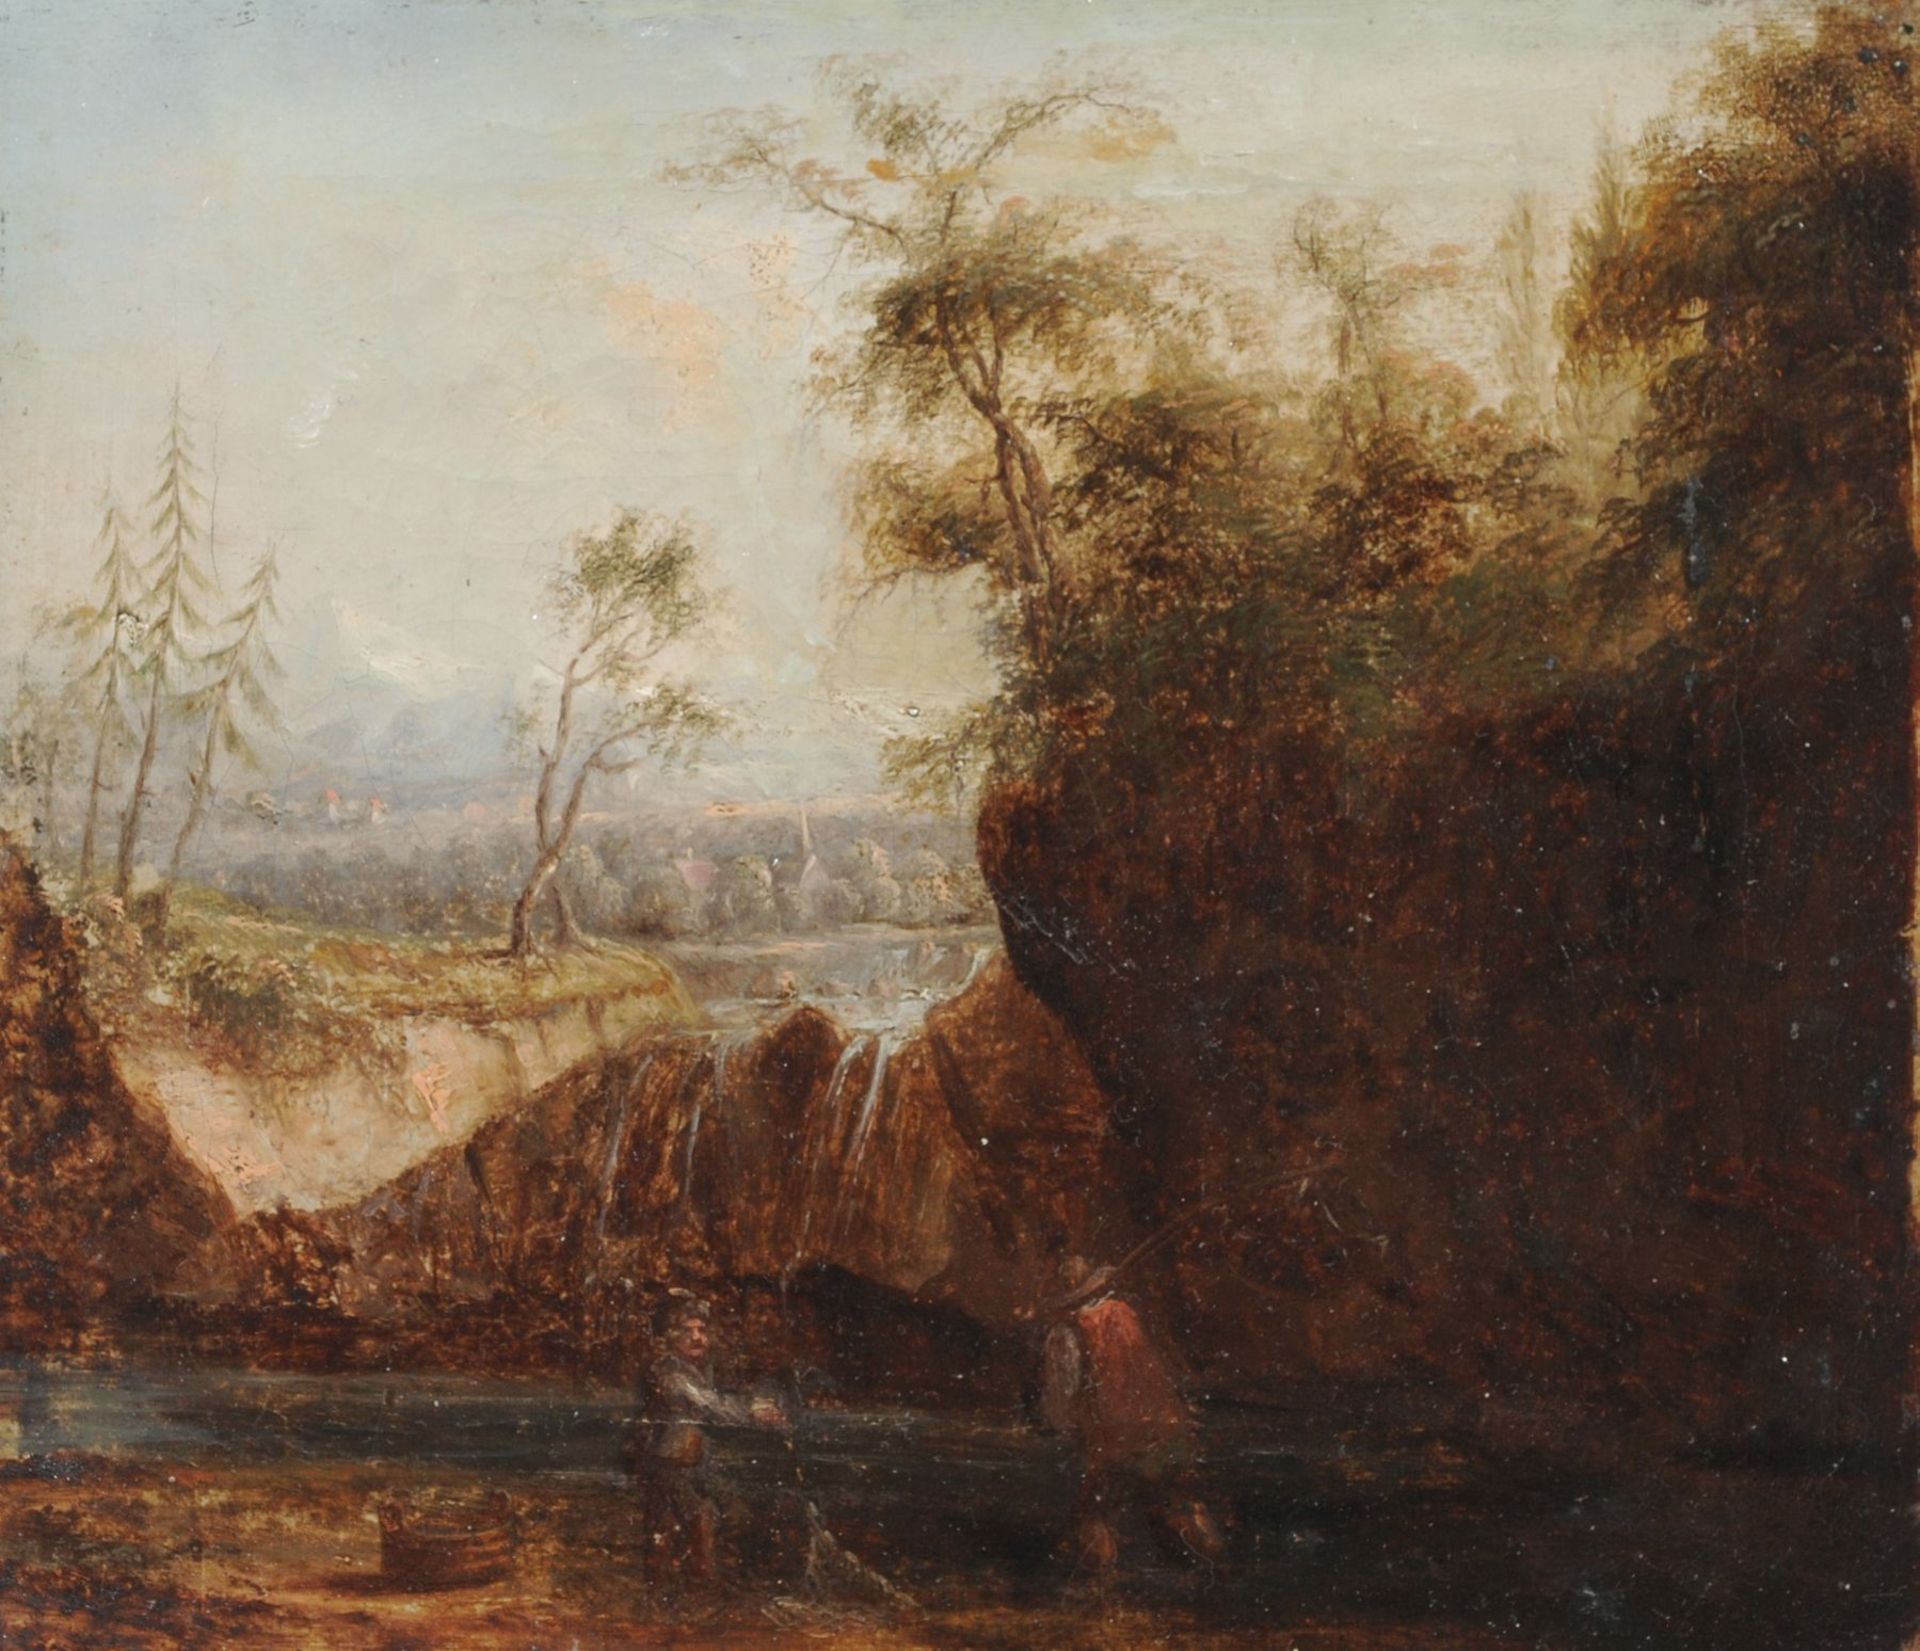 Unbekannter Künstler, Zwei Fischer an einem Wasserfall in ländlicher Szenerie. Anfang 19. Jh. Öl auf